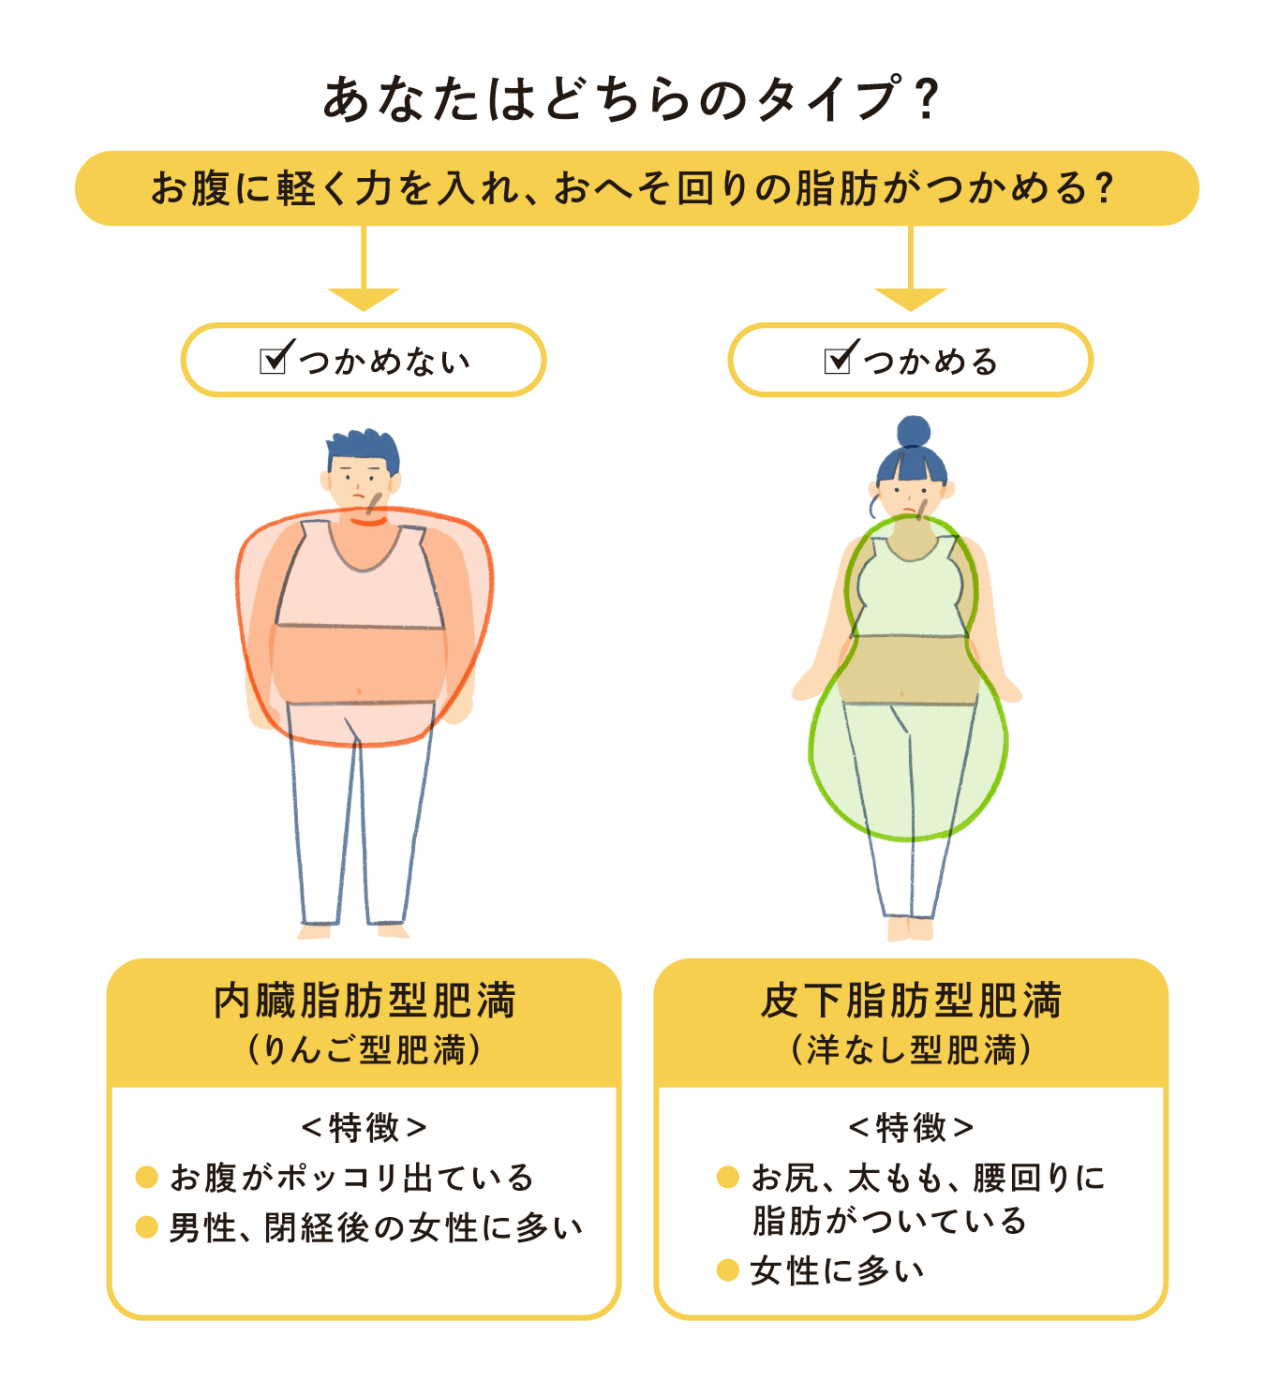 内臓脂肪型肥満と 皮下脂肪型肥満を説明するイラスト。あなたはどちらのタイプ？お腹に軽く力を入れ、おへそ周りの脂肪がつかめるかチェック。つかめないなら内臓脂肪型肥満（リンゴ型肥満）、つかめるなら皮下脂肪型肥満（洋ナシ型肥満）となります。内臓脂肪型肥満の特徴は、お腹がポッコリ出ている、男性・閉経後の女性に多い。皮下脂肪型肥満の特徴は、お尻、太もも、腰回りに脂肪がついている、女性に多い。